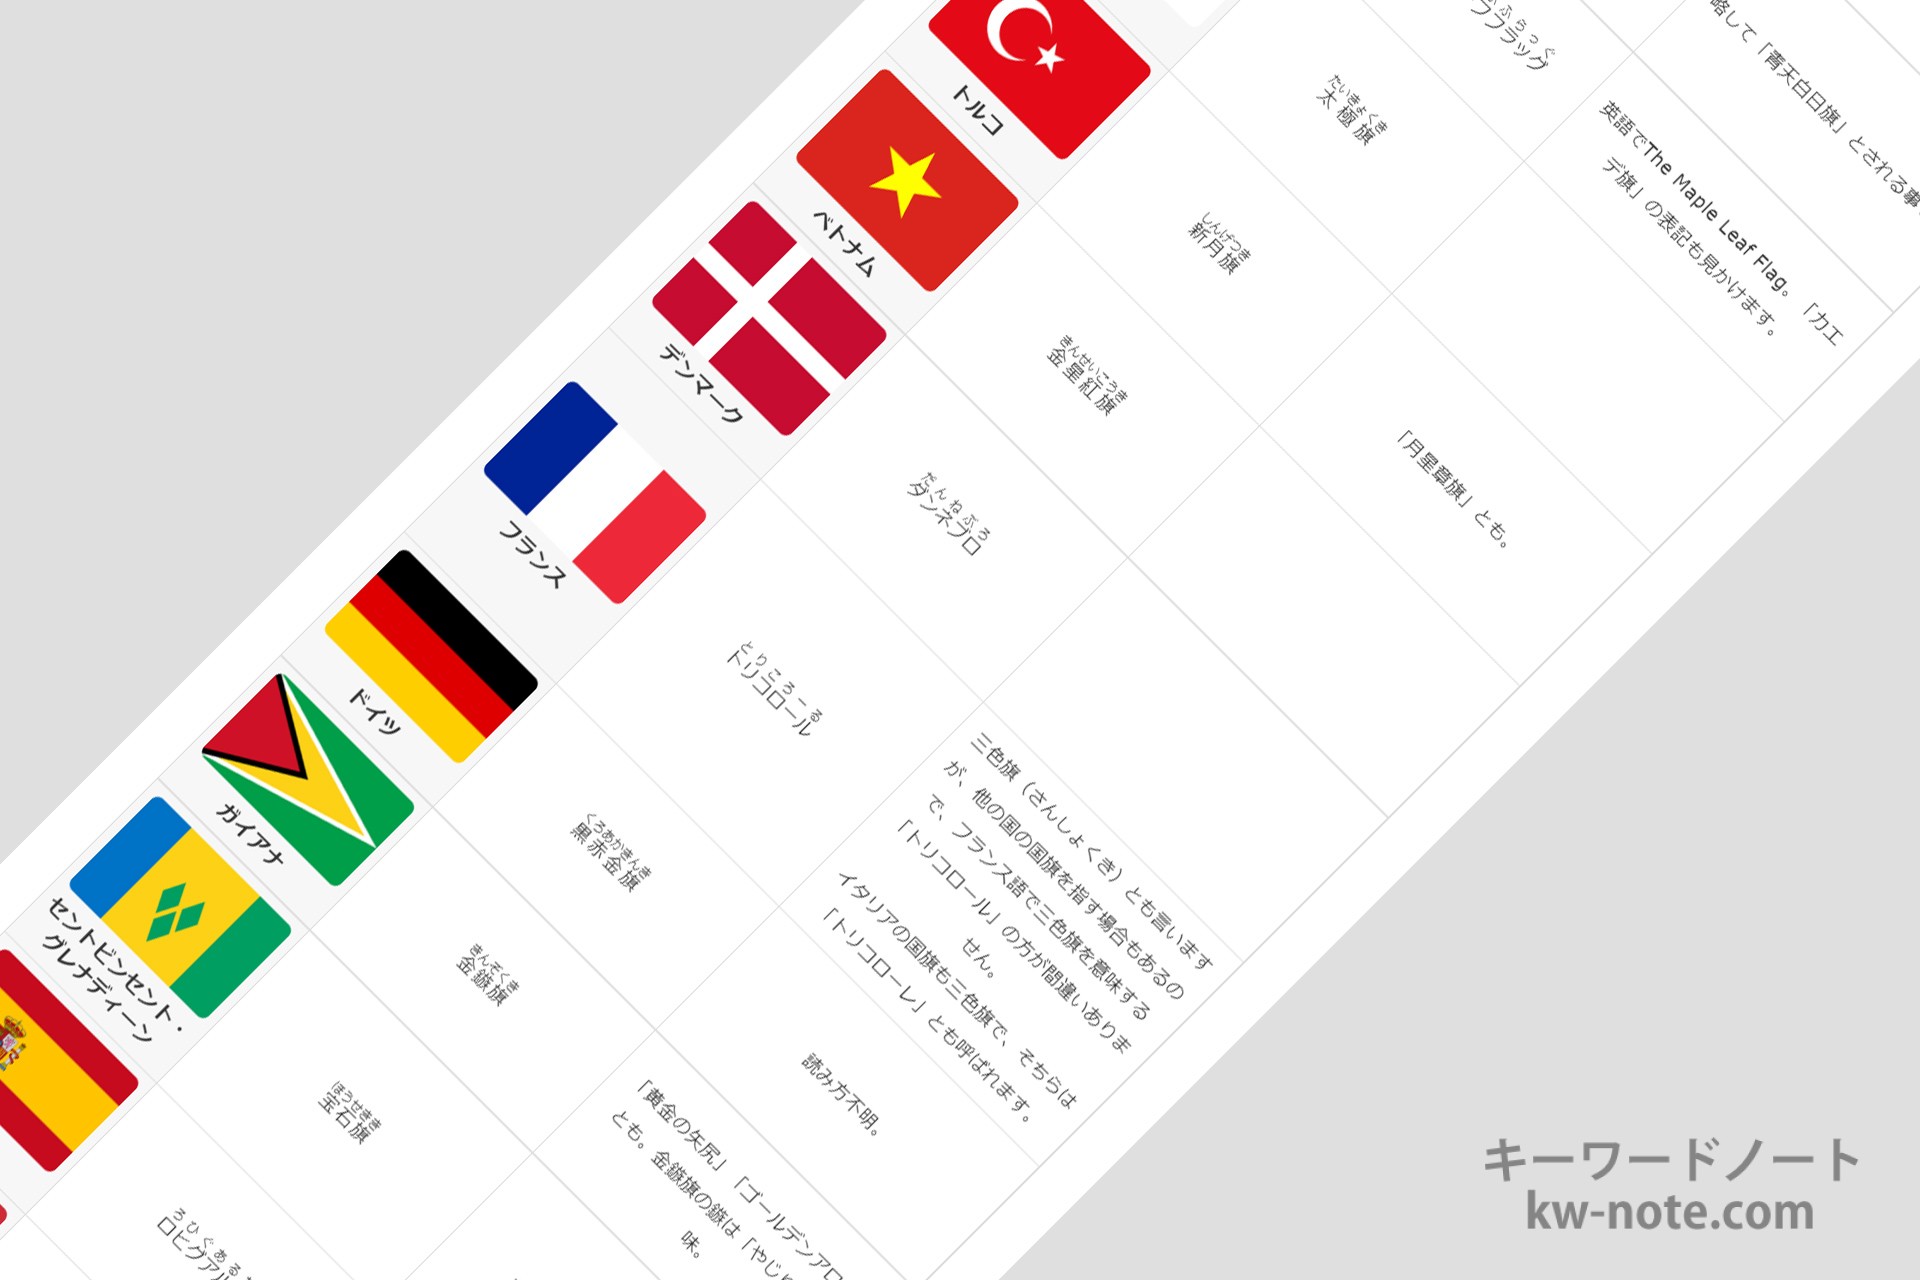 日の丸 星条旗 など世界各国の国旗の別名 俗称 愛称 一覧 キーワードノート